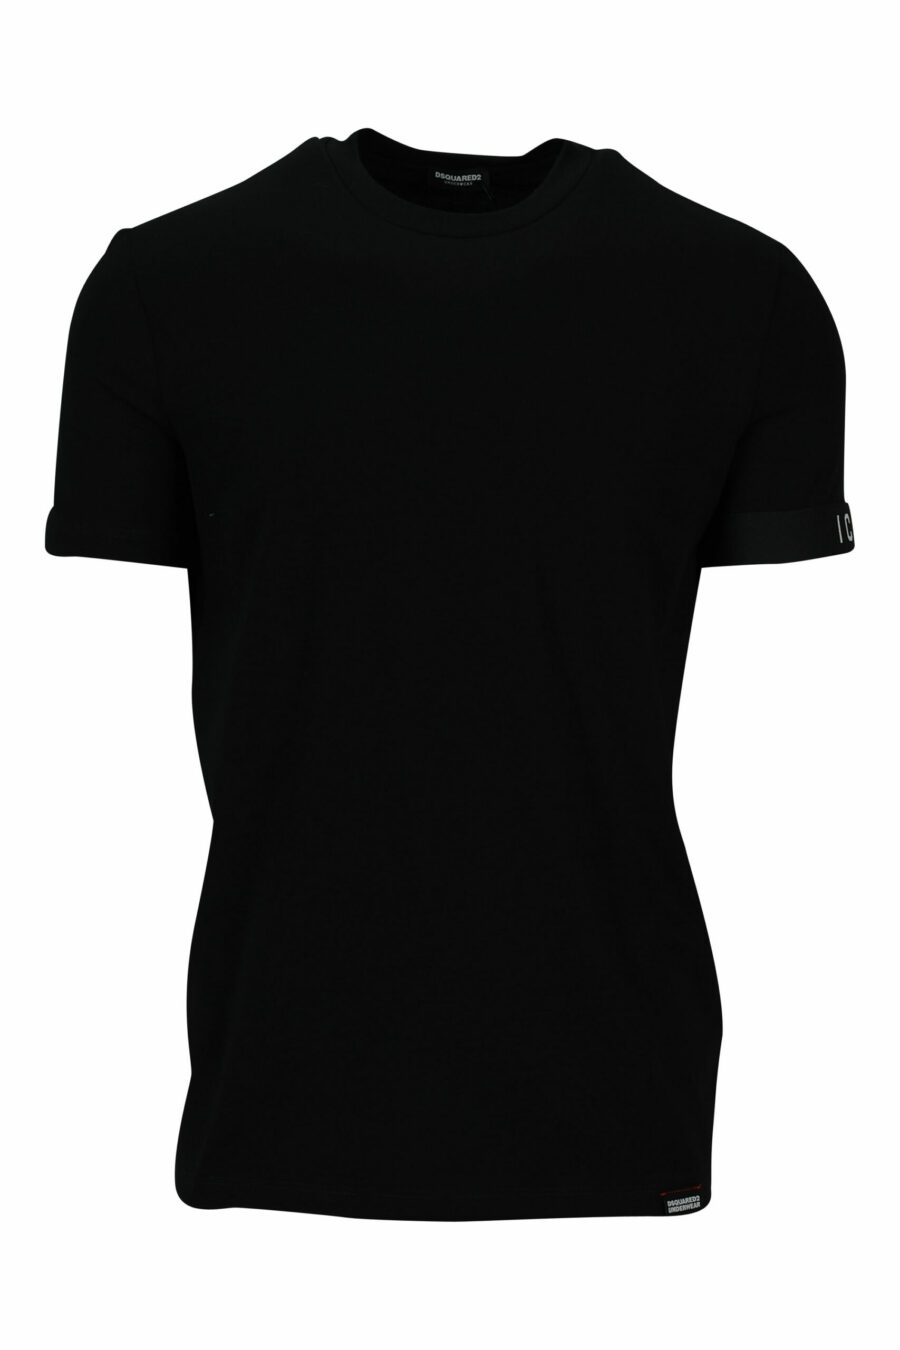 Schwarzes T-Shirt mit kleinem Logo - 8032674767431 skaliert